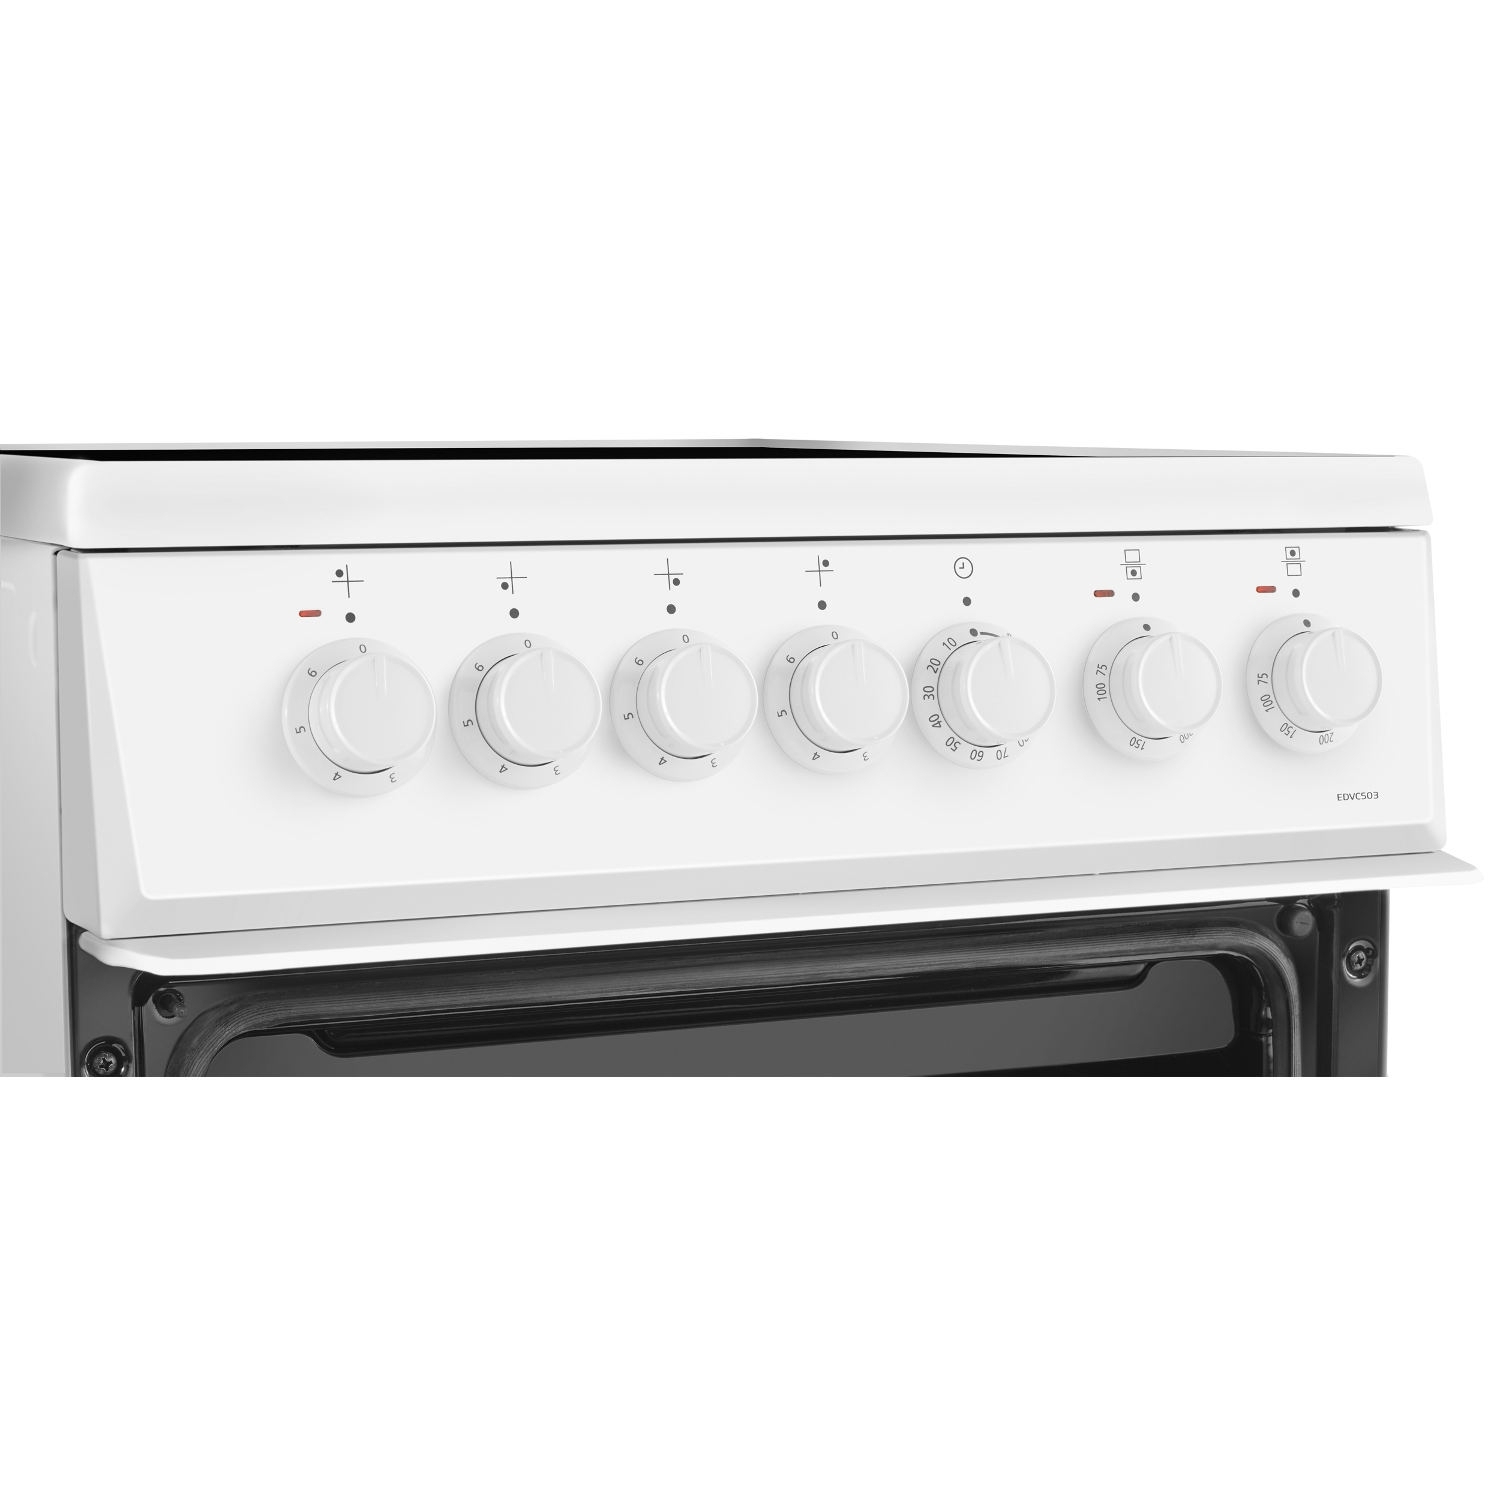 Beko EDVC503W 50cm Electric Double Oven - White - 5